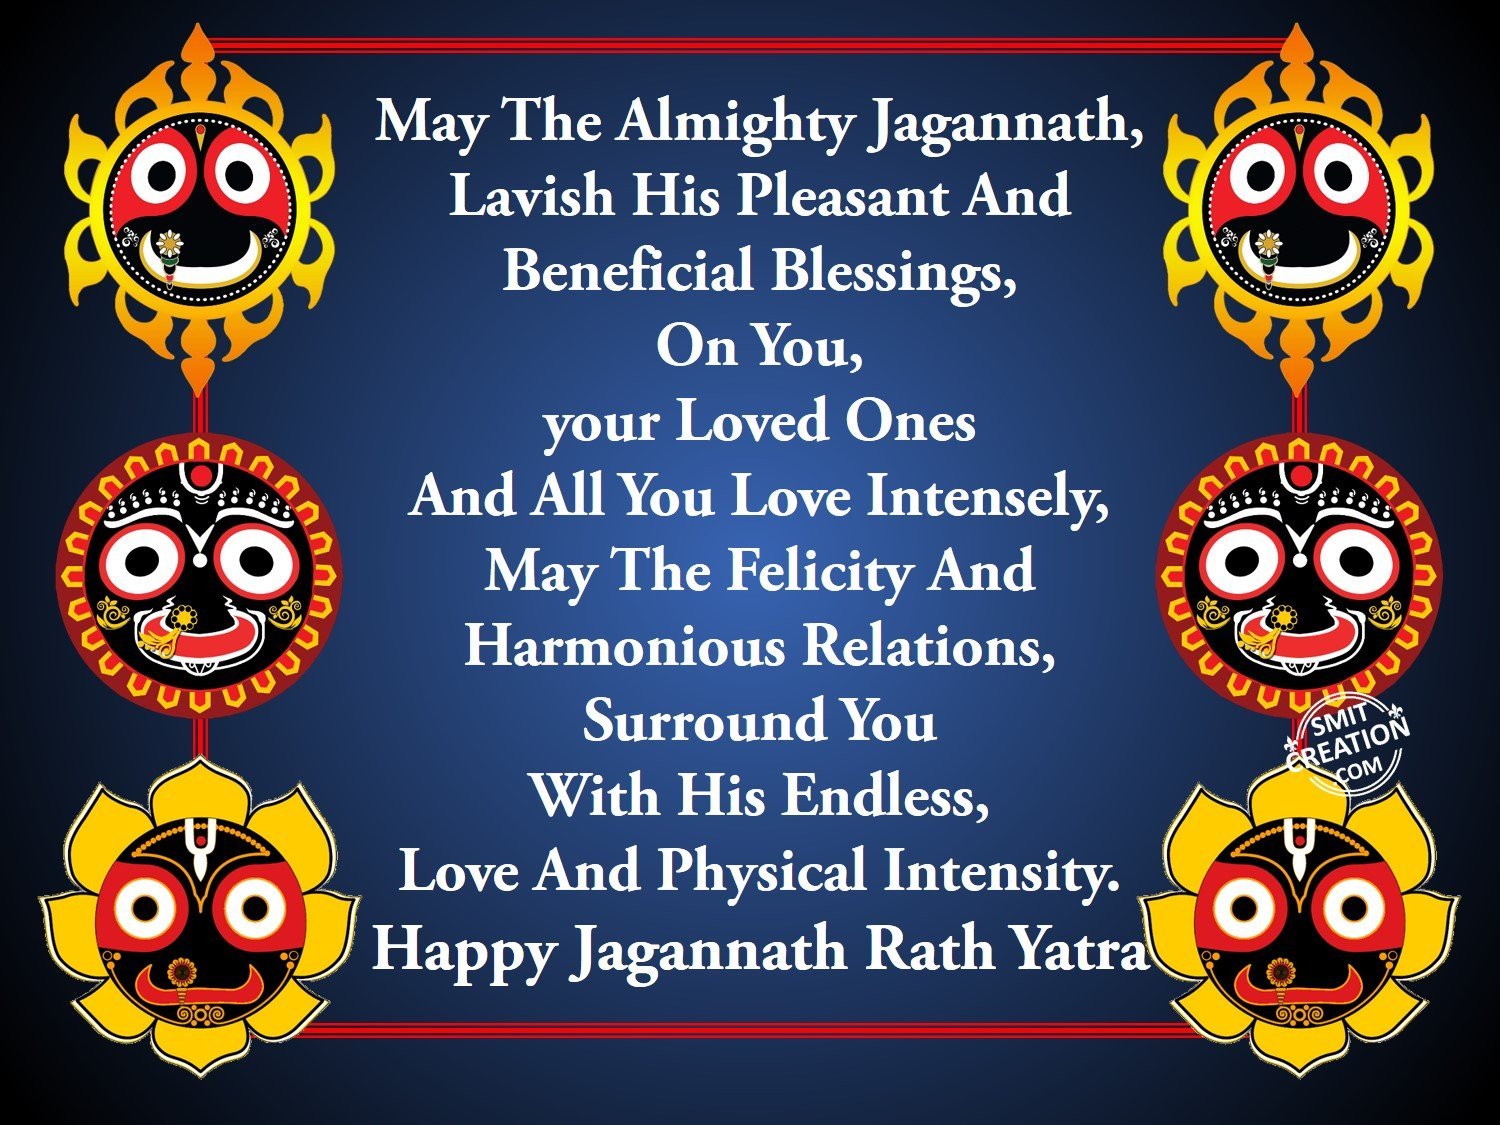 Lord Jagannath Yatra 2020 Wishes